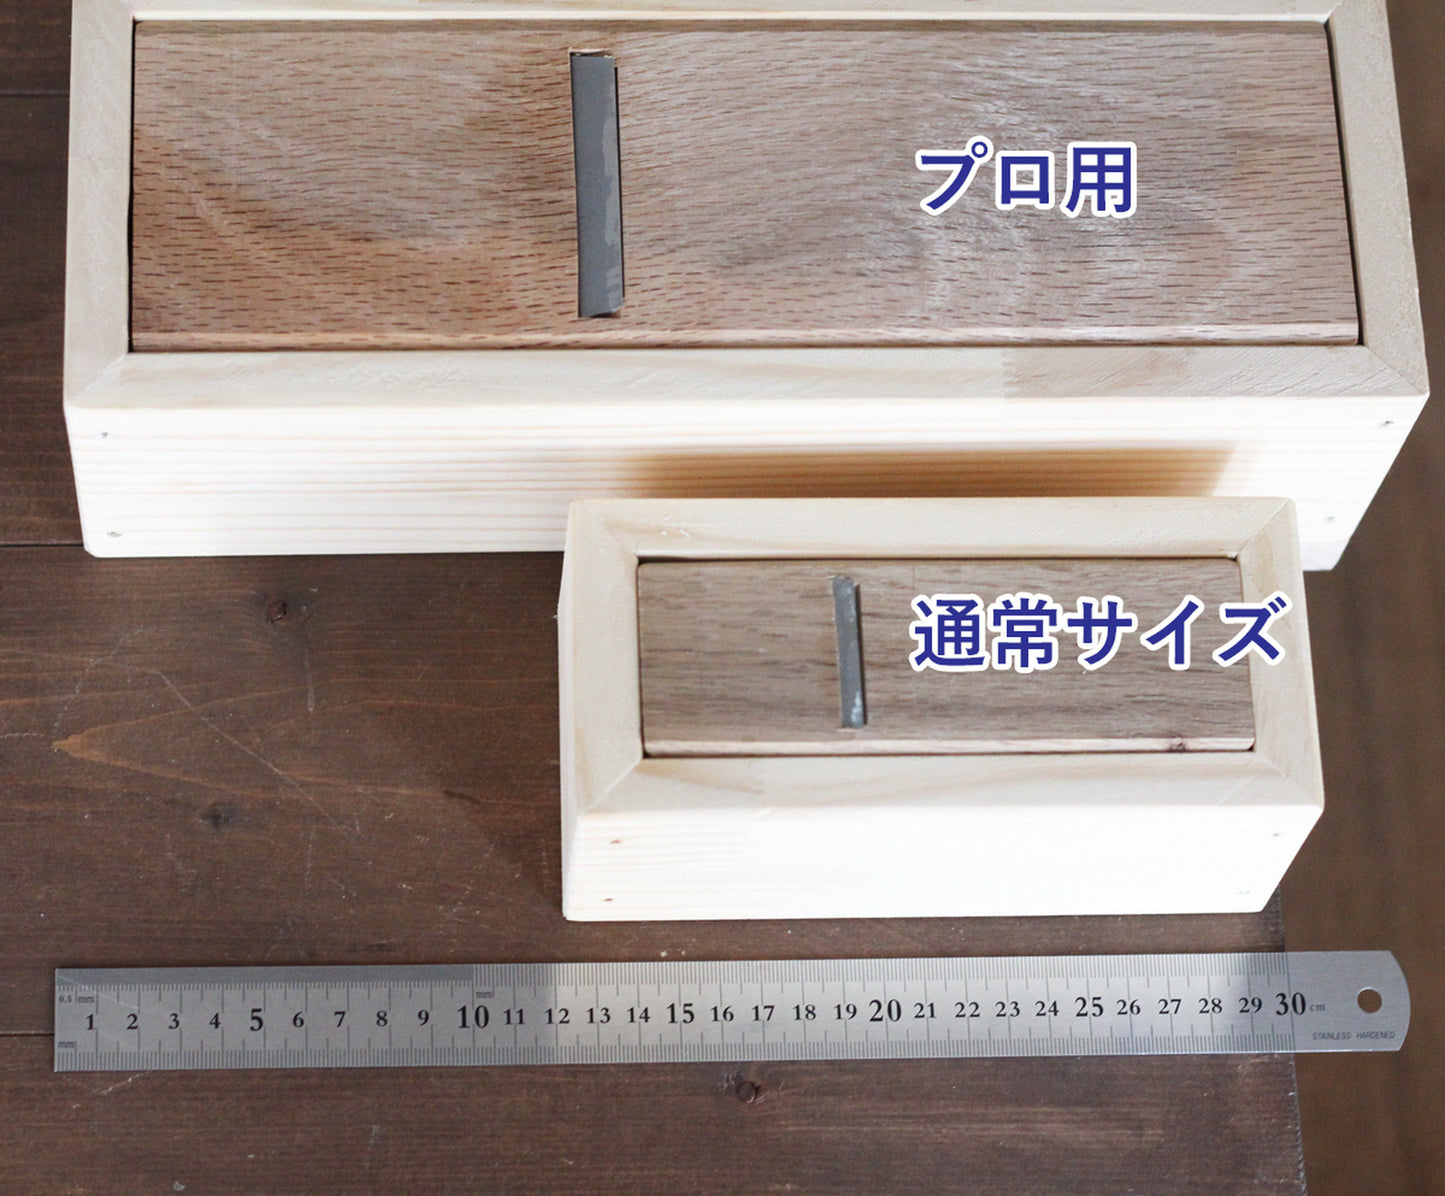 手作り石鹸用【プロ用】ソープスライサー面取り器